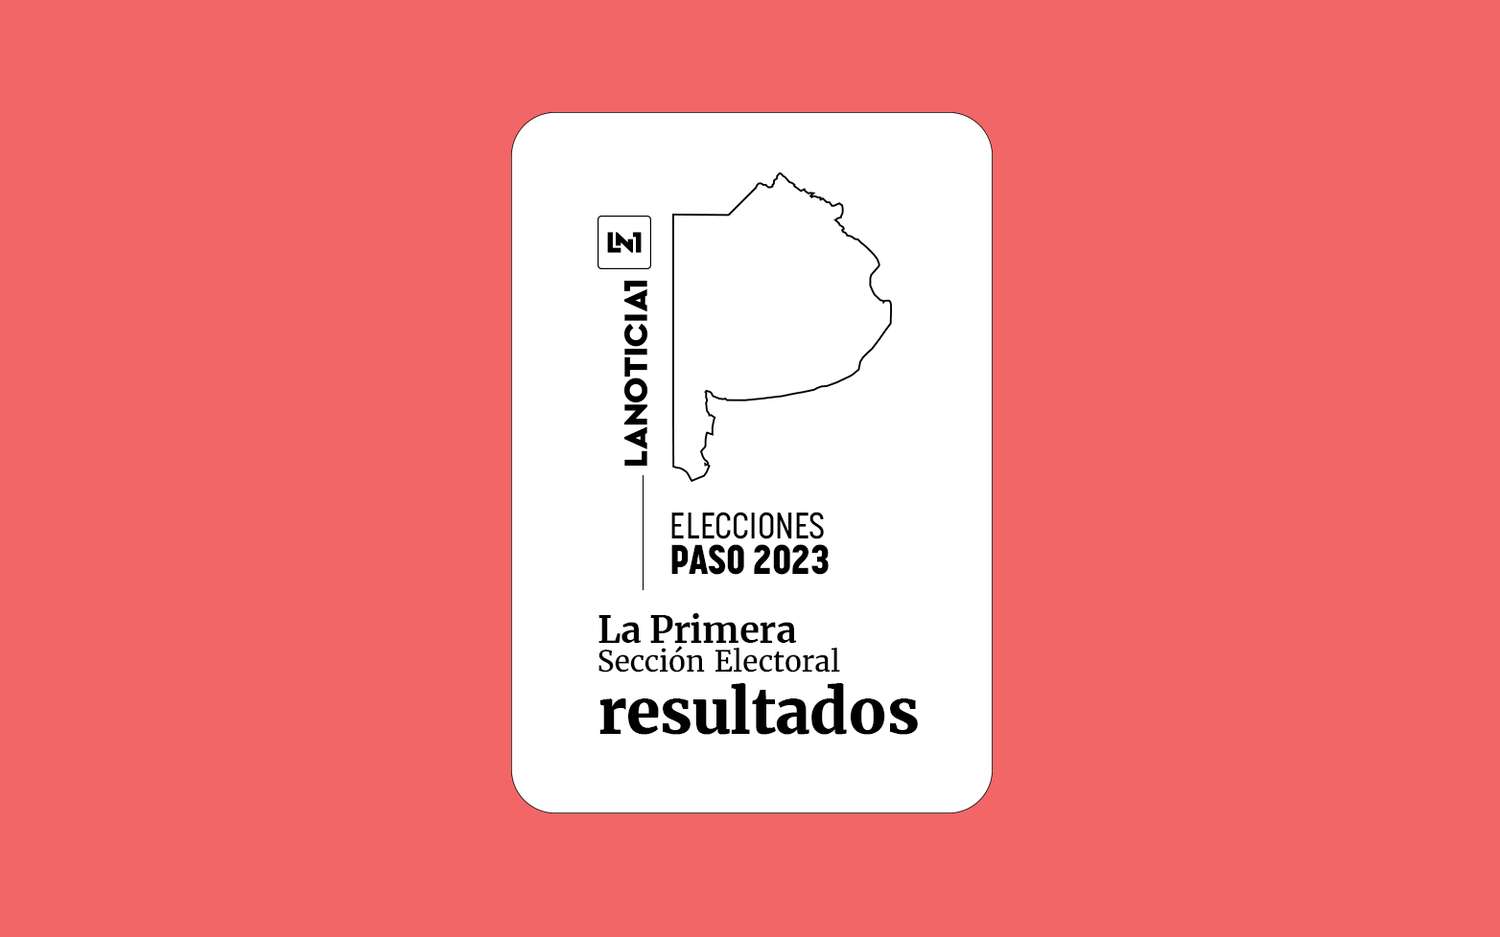 Elecciones PASO 2023: Resultados oficiales en la Primera Sección electoral